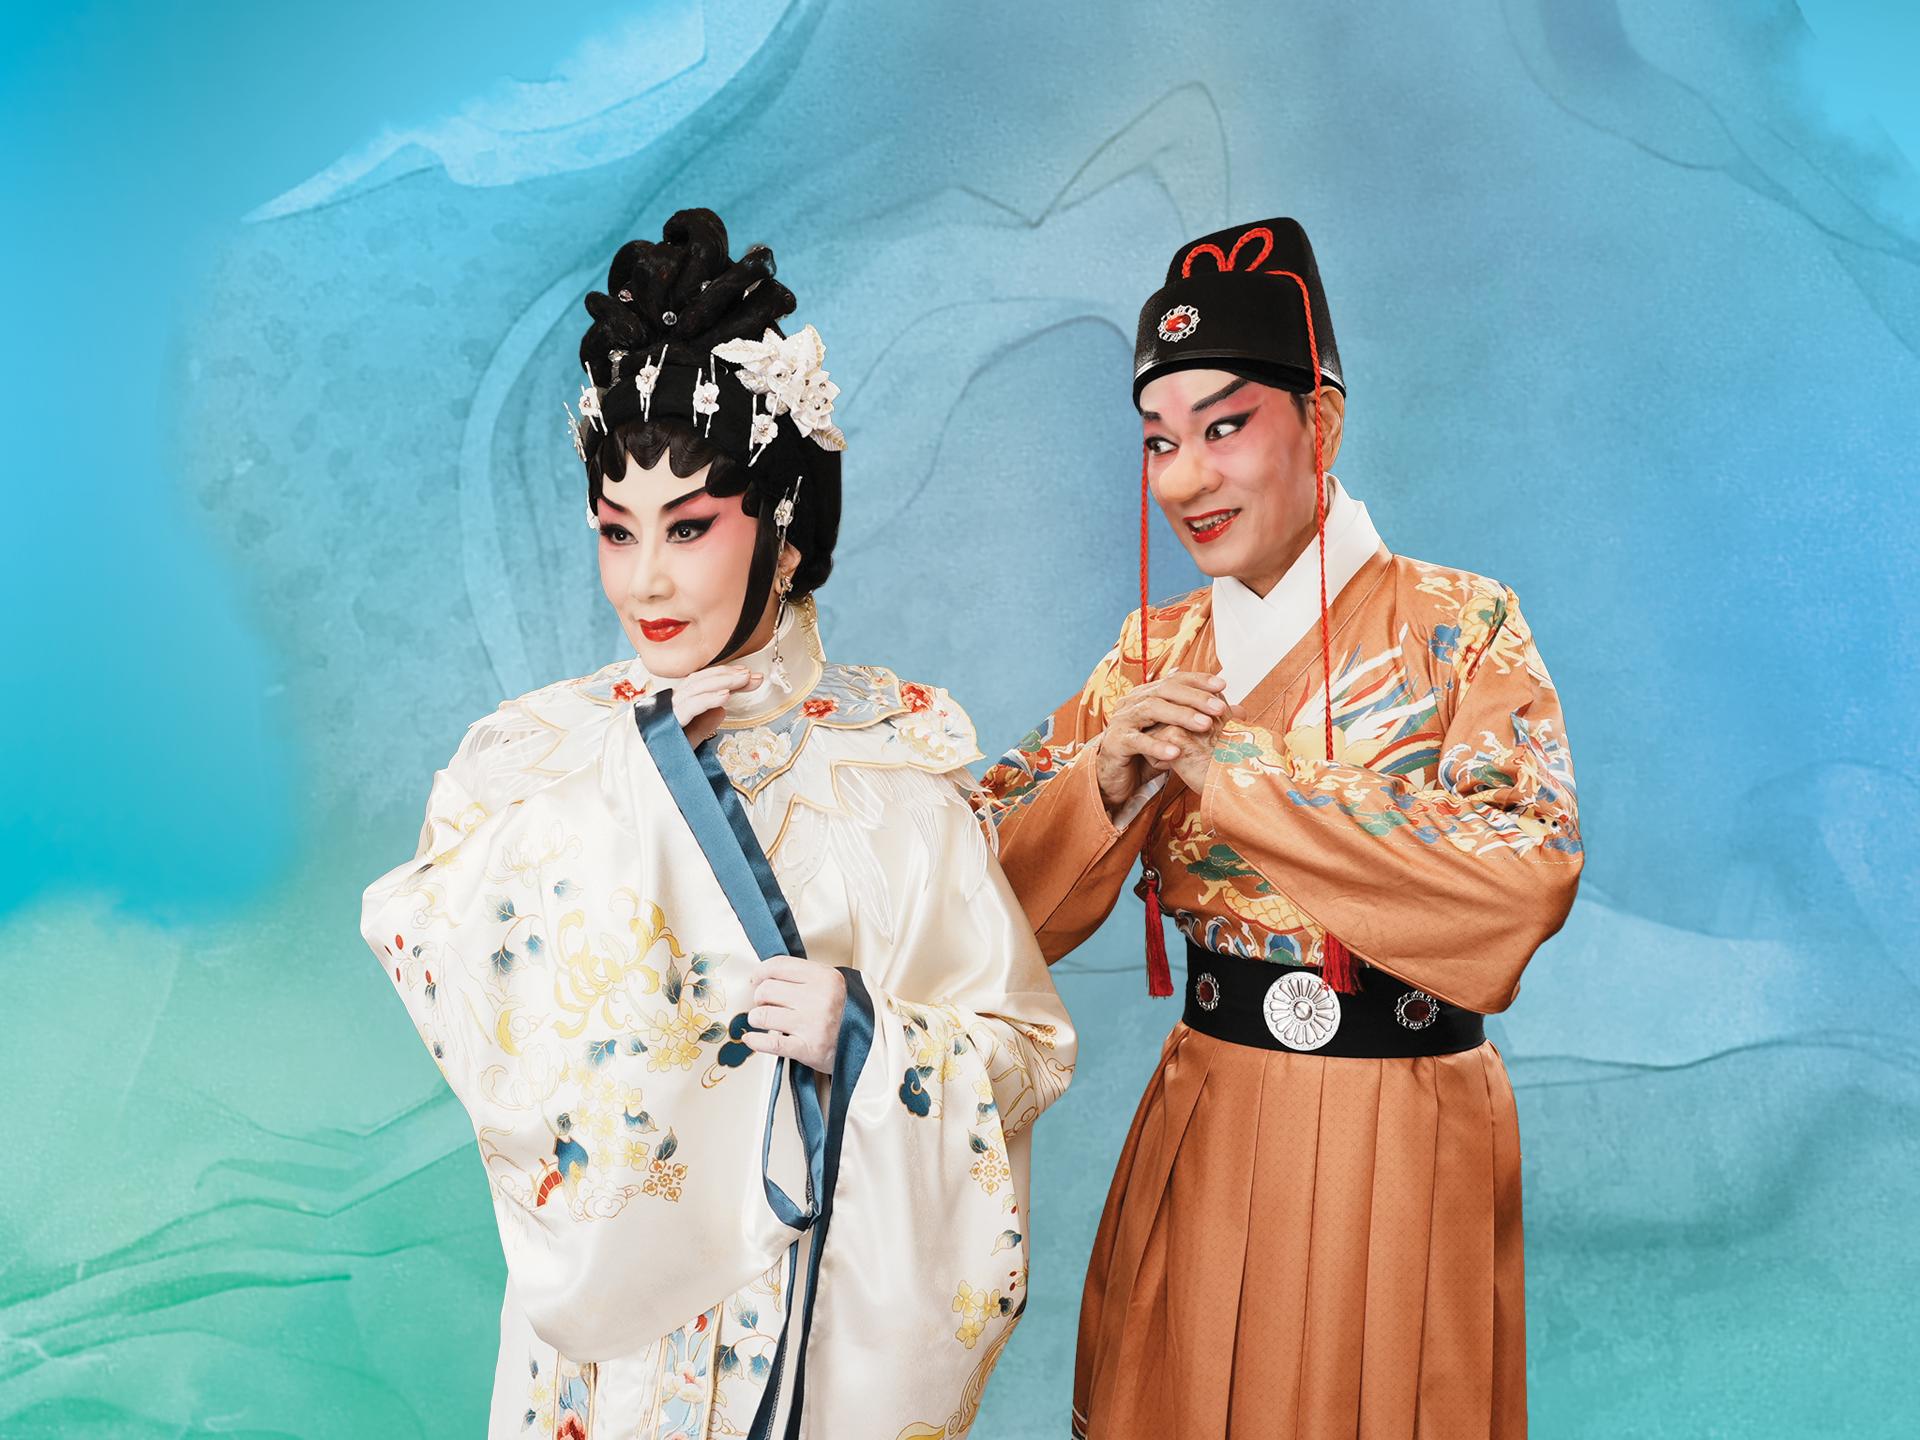 首届「中华文化节」将于六月至九月期间举行。图示「中国戏曲节」开幕节目——新编粤剧《大鼻子情圣》的剧照。